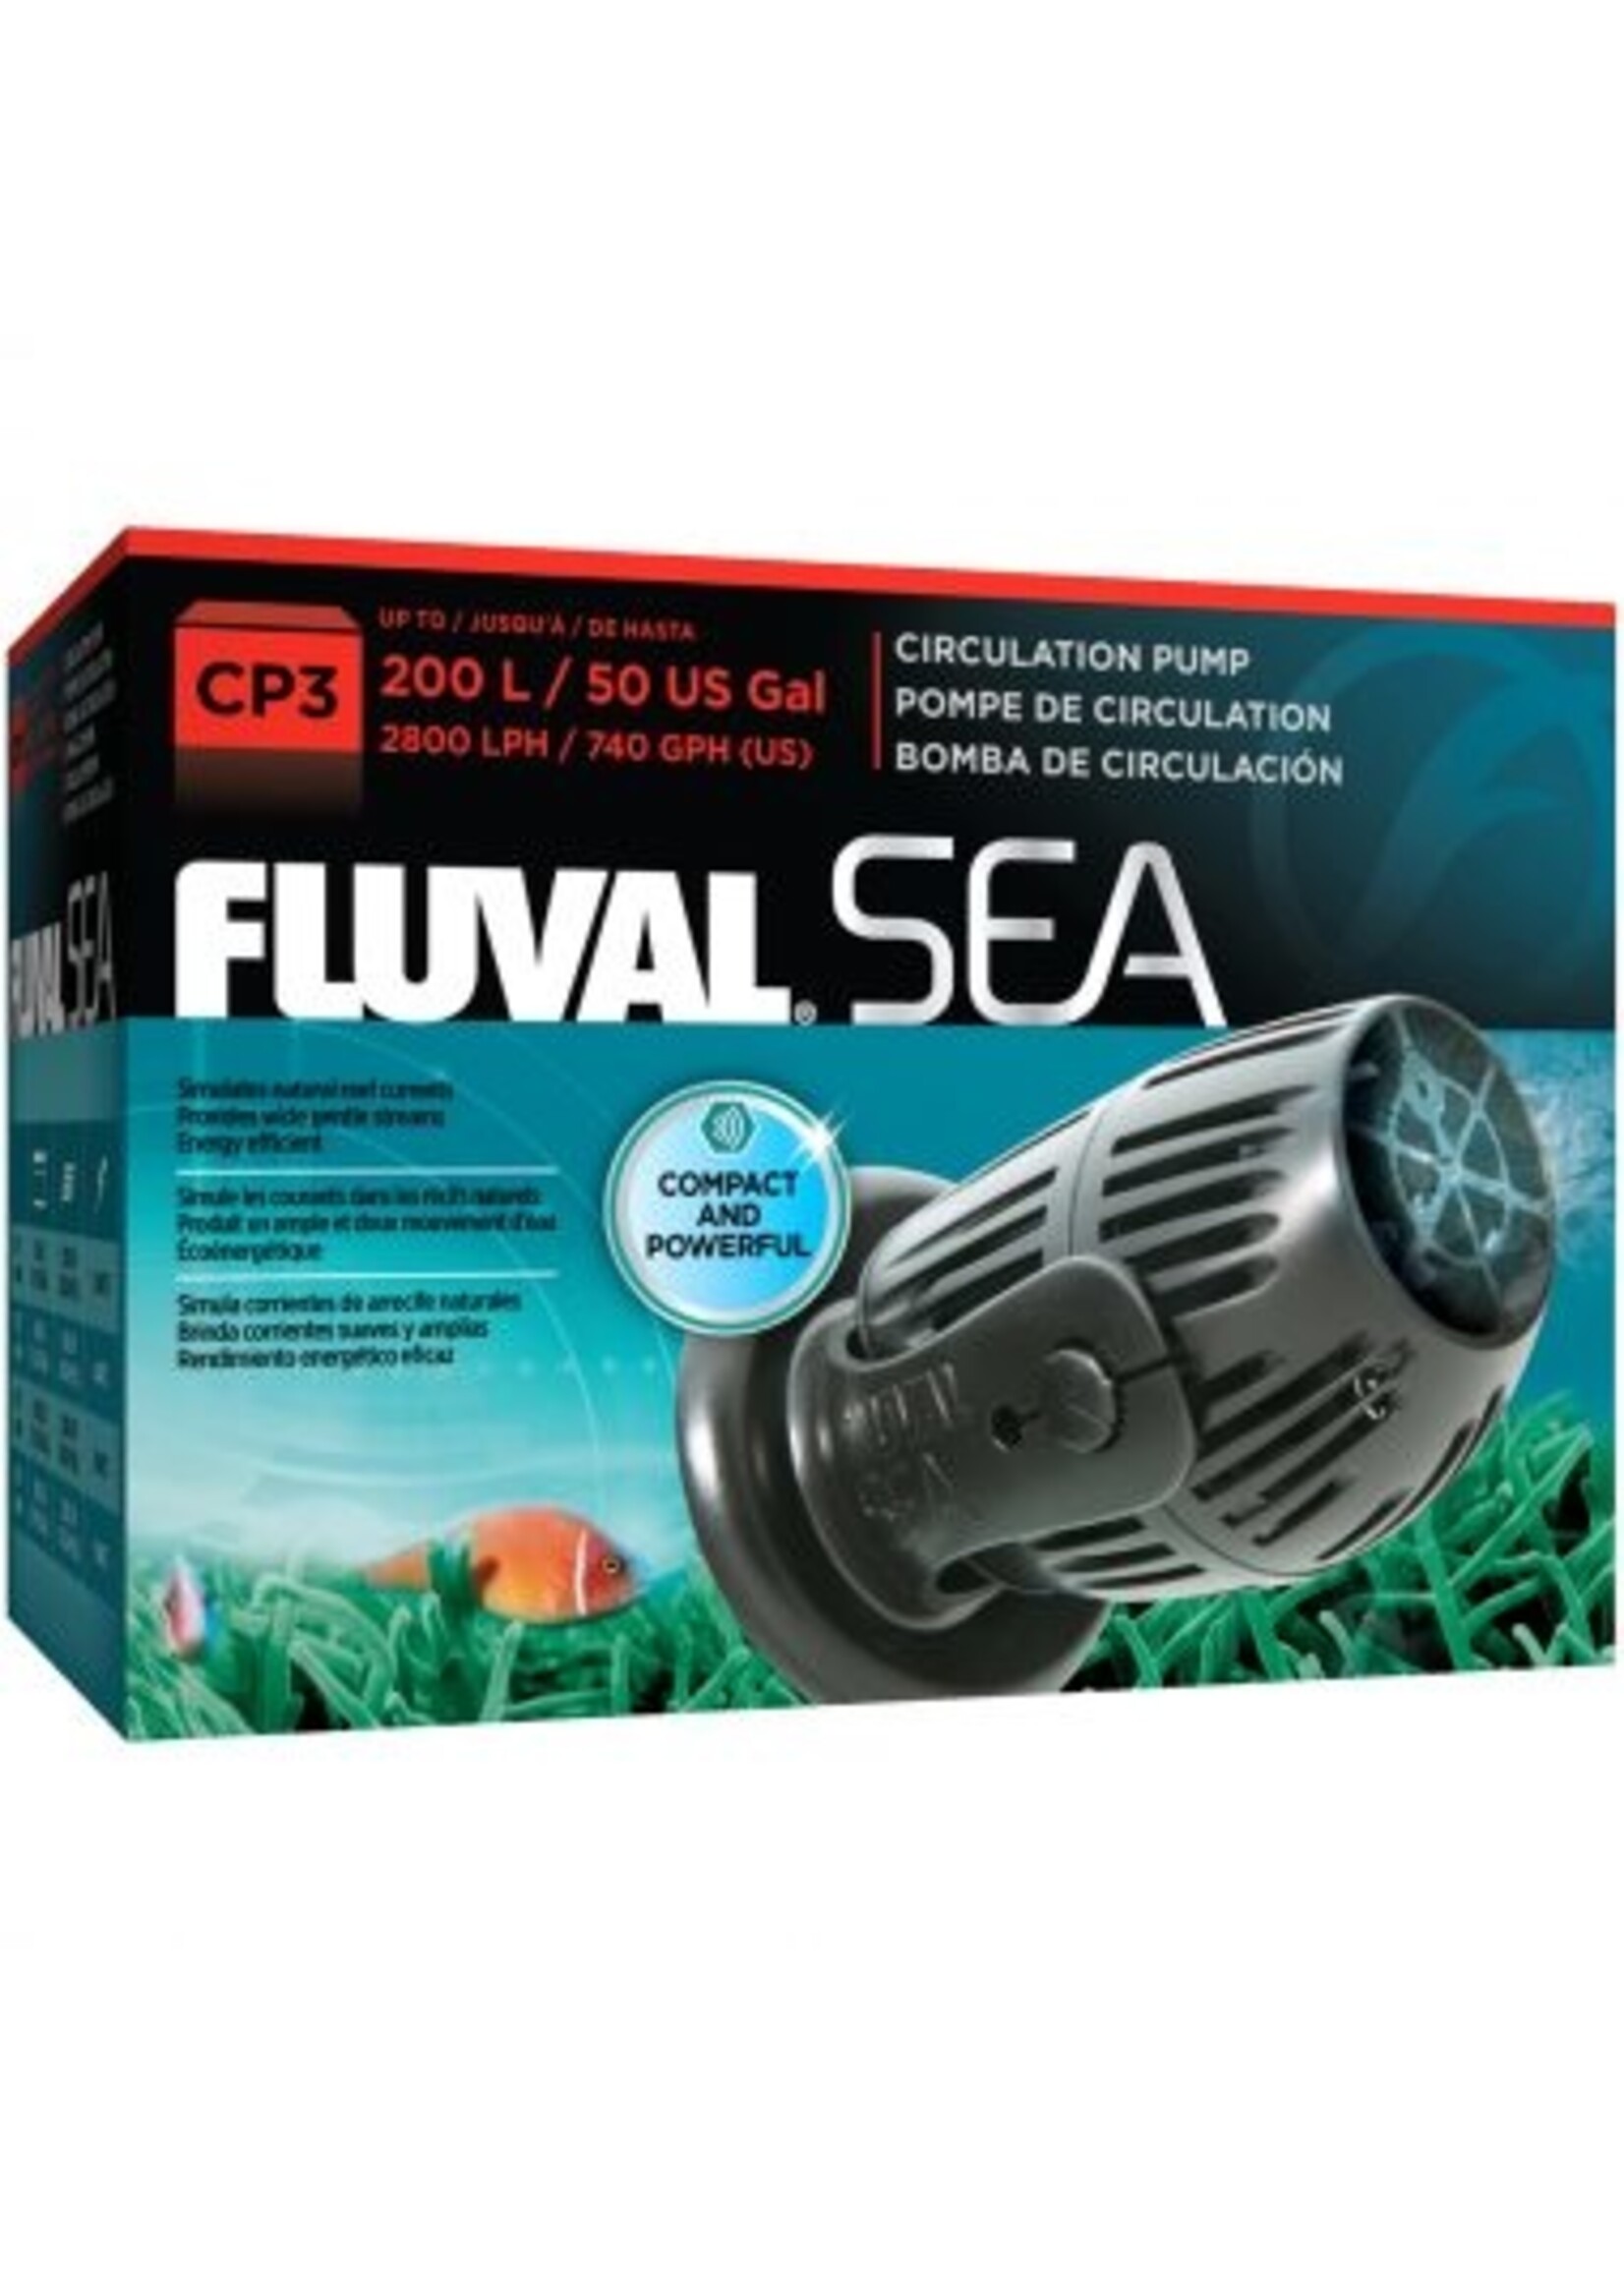 Fluval Sea Fluval Sea CP3 Circulation Pump- 5w - 2800 LPH (740GPH)